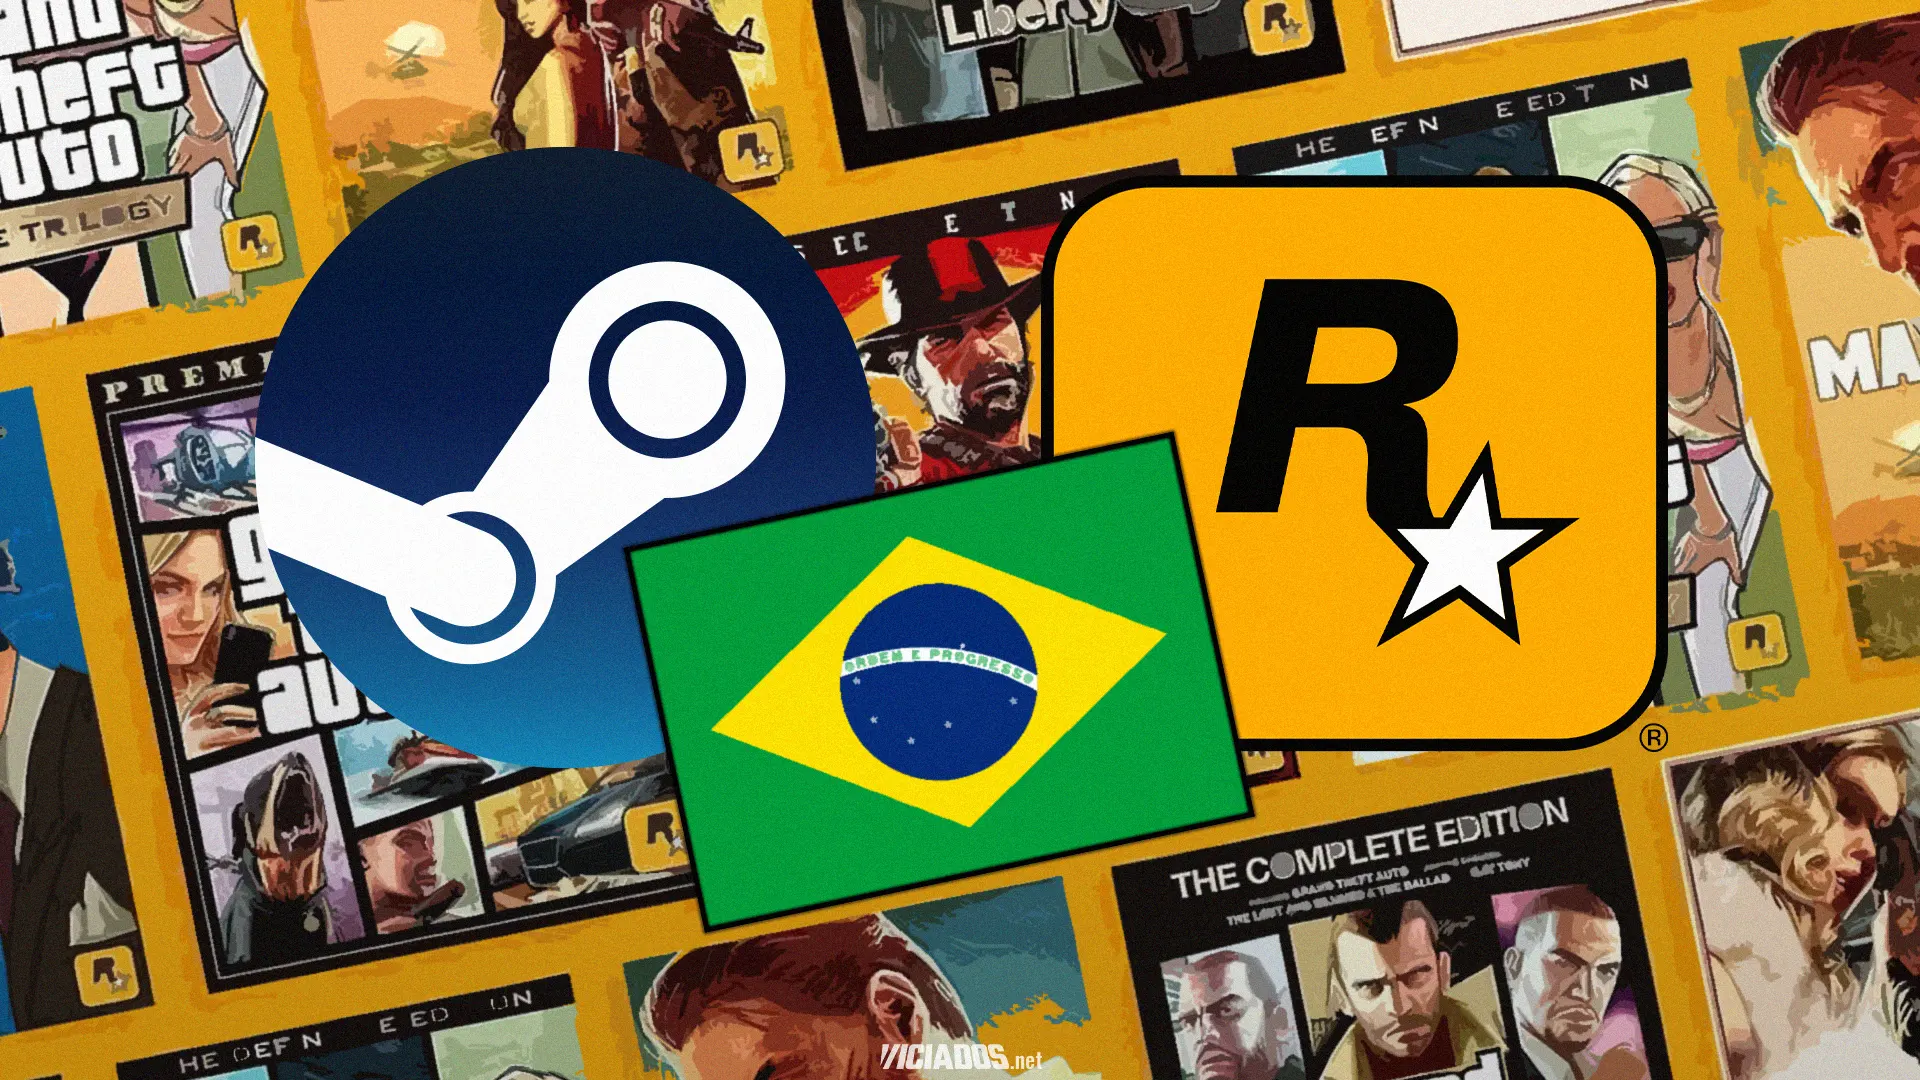 Steam | Jogo da Rockstar Games que acontece no Brasil está saindo por menos de 30 reais 2023 Viciados